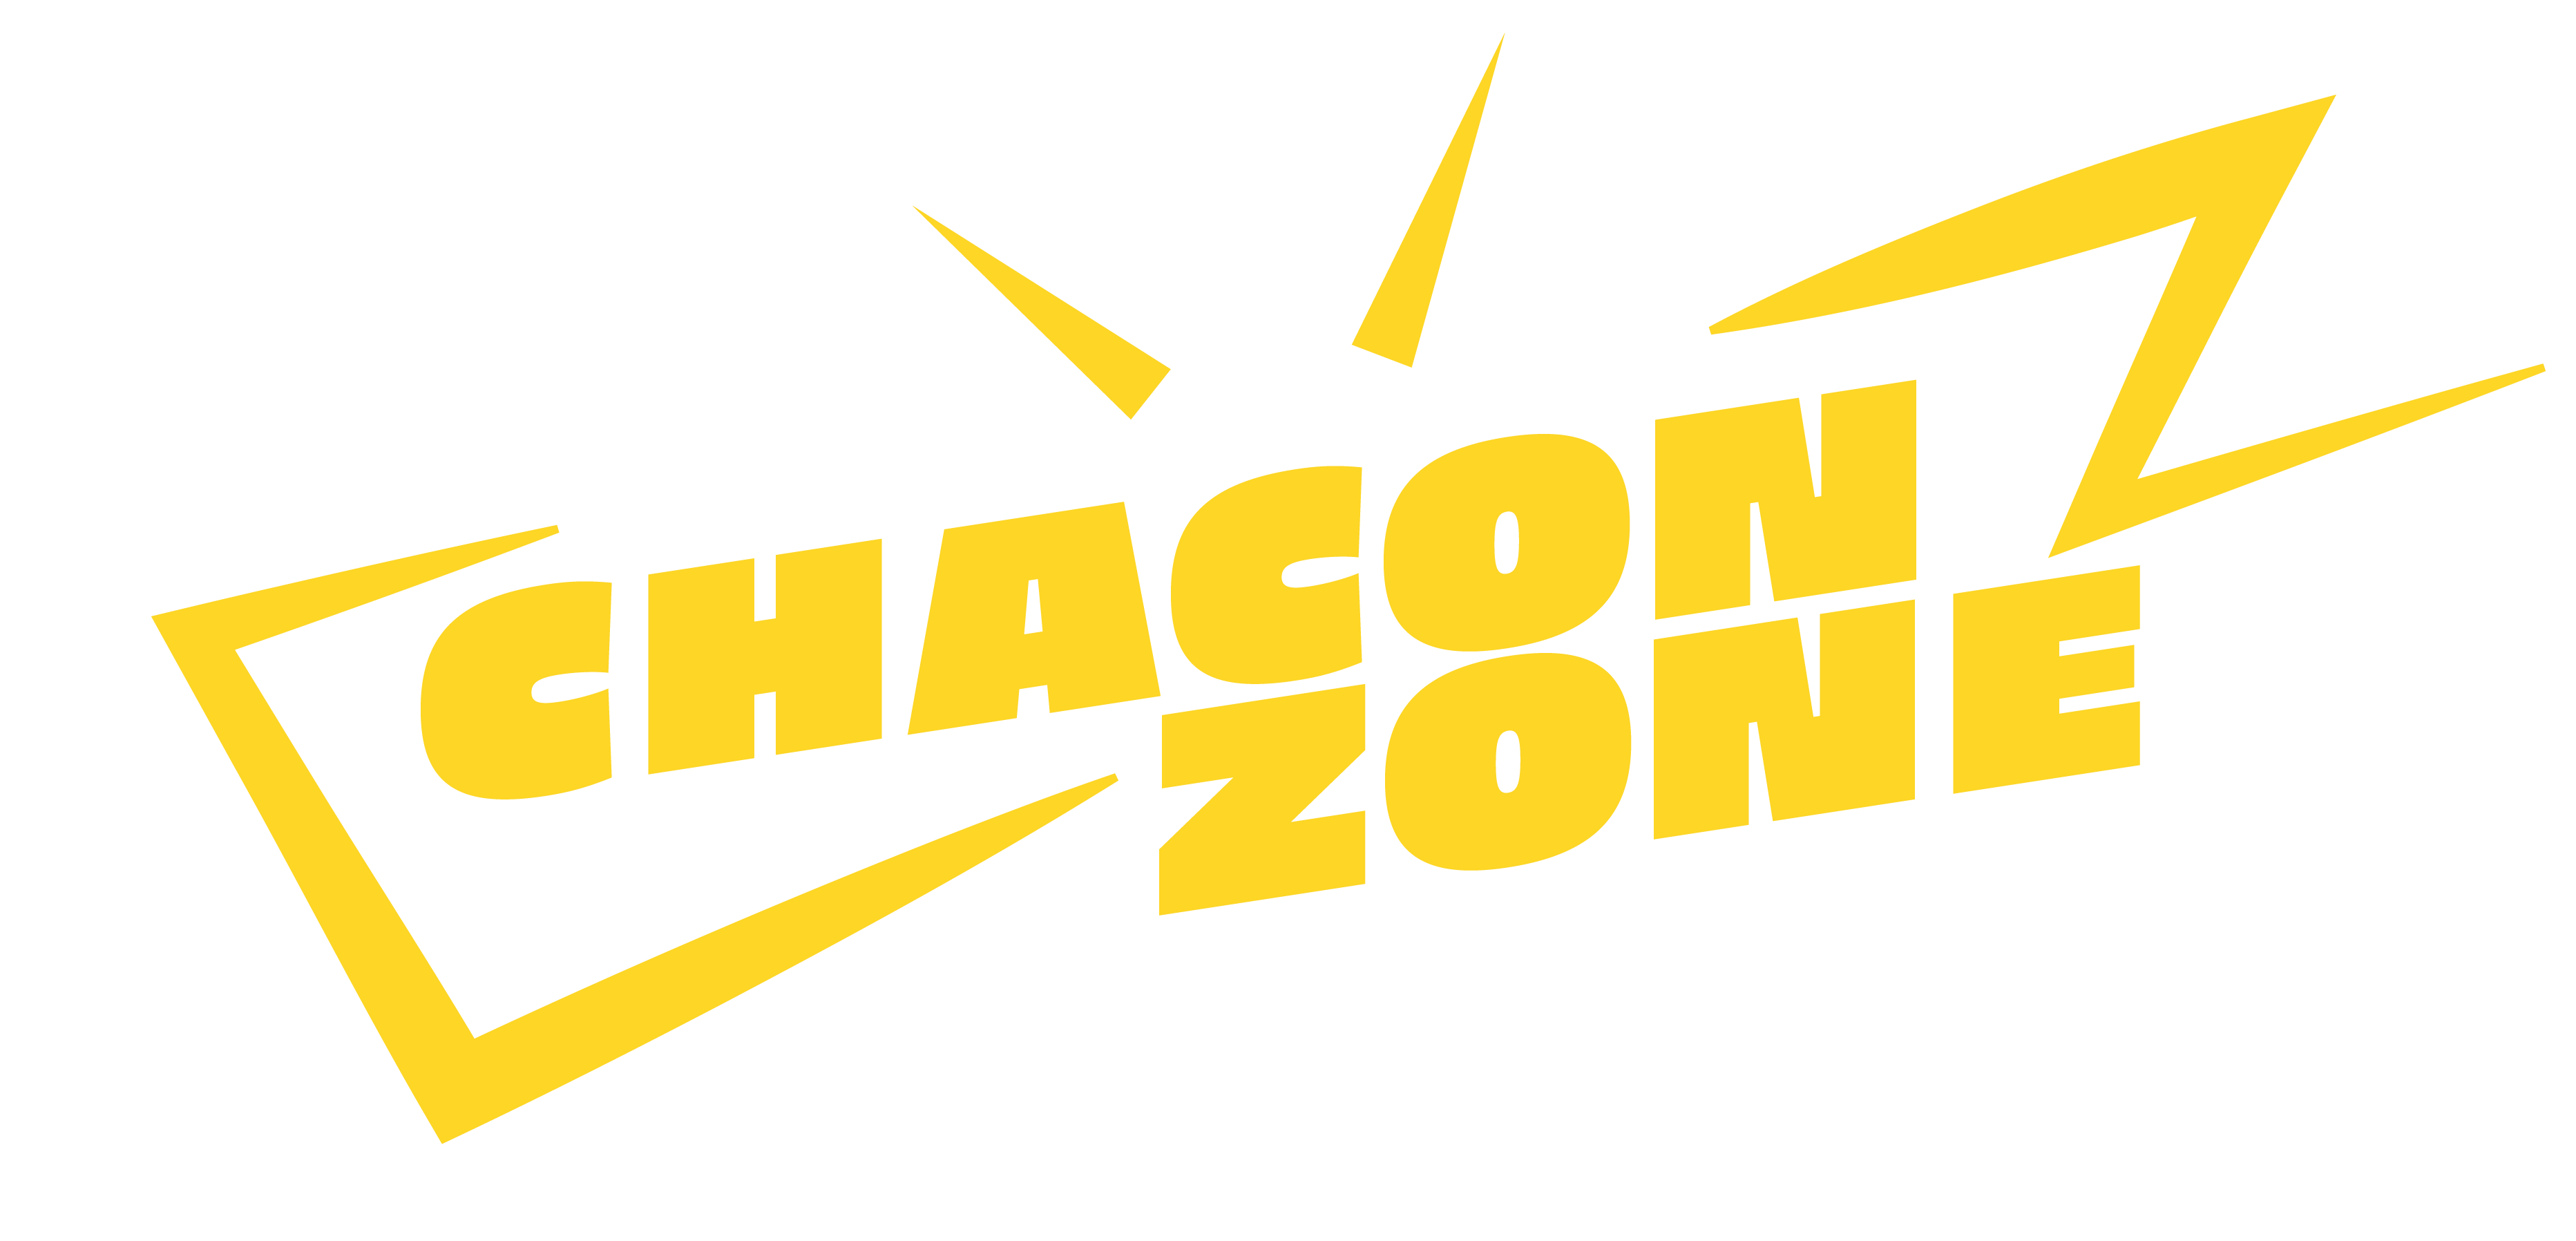 brandon chacon